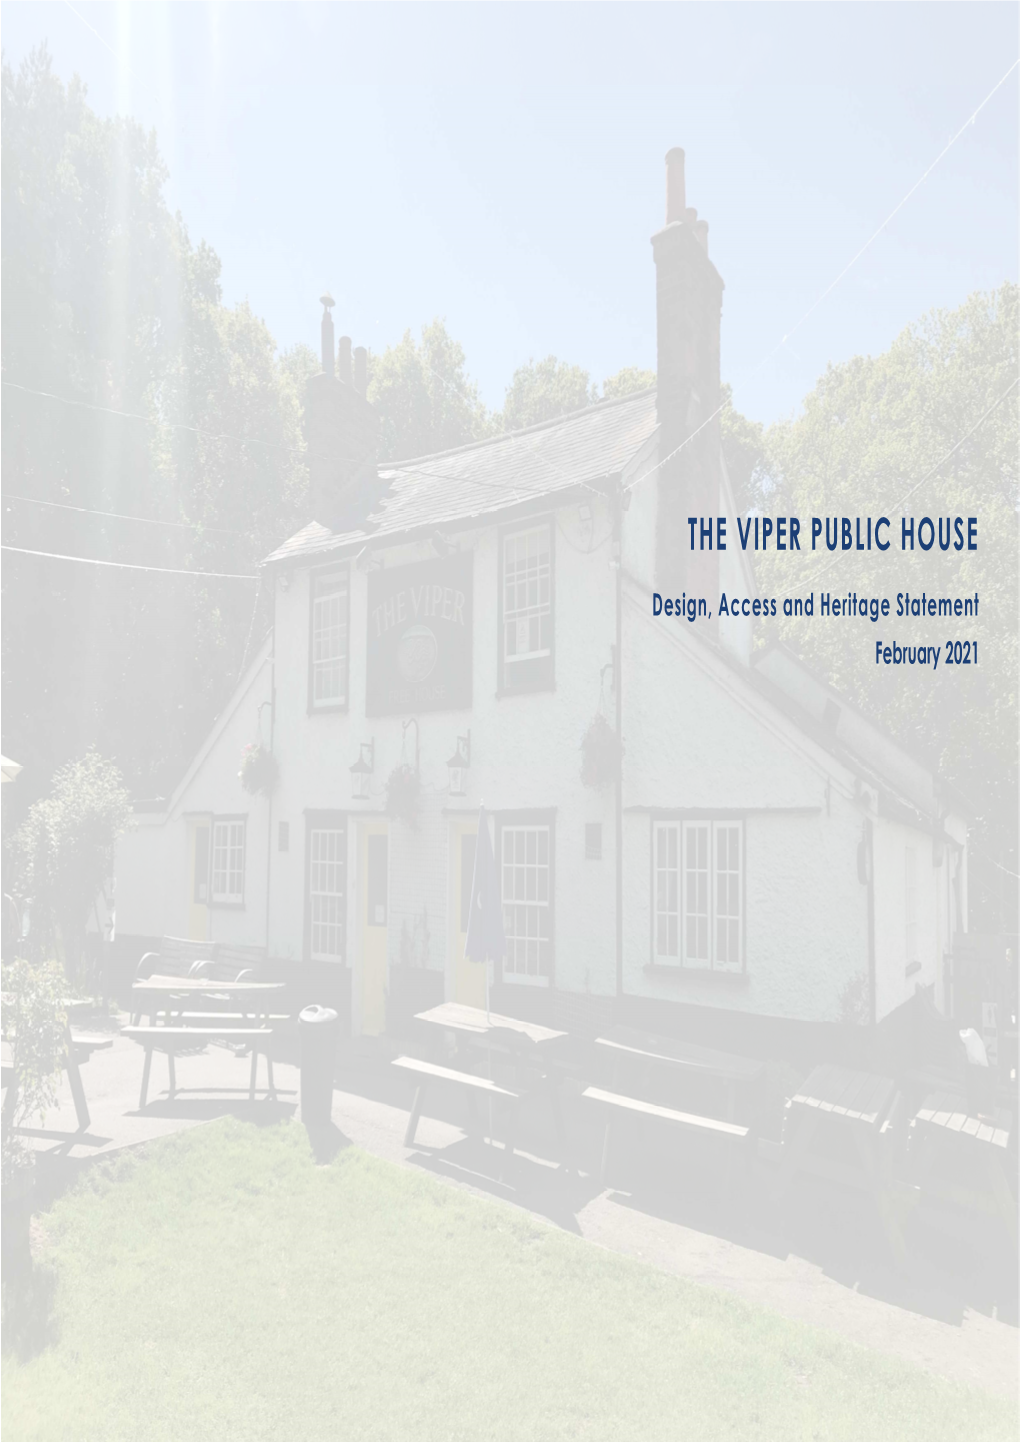 The Viper Public House